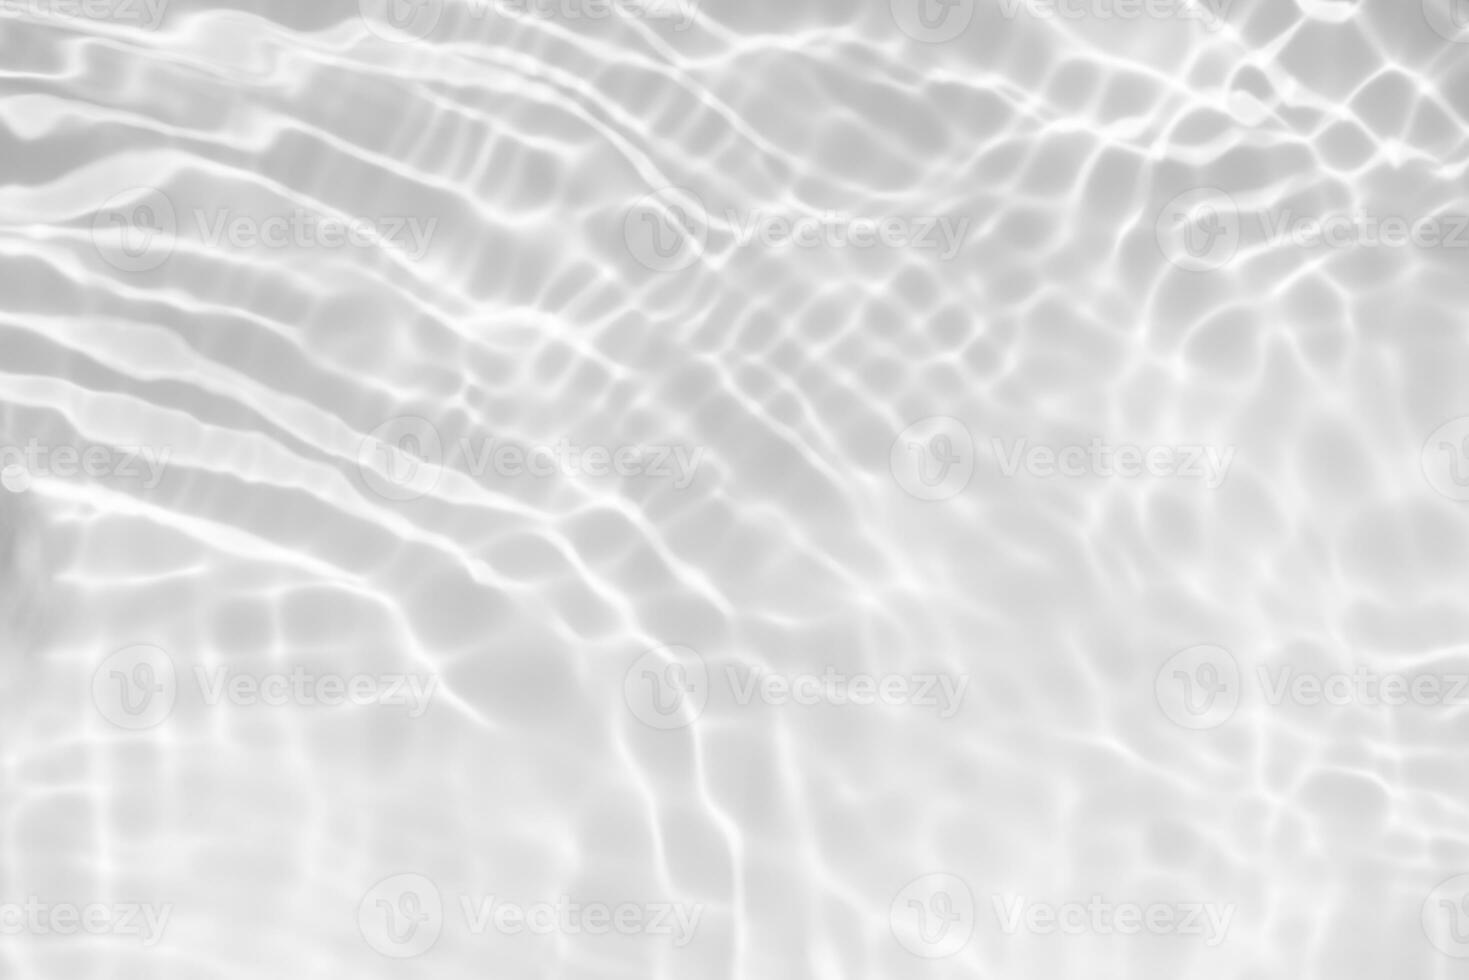 wit water met rimpelingen Aan de oppervlak. onscherp wazig transparant wit gekleurde Doorzichtig kalmte water oppervlakte structuur met spatten en bubbels. water golven met schijnend patroon structuur achtergrond. foto